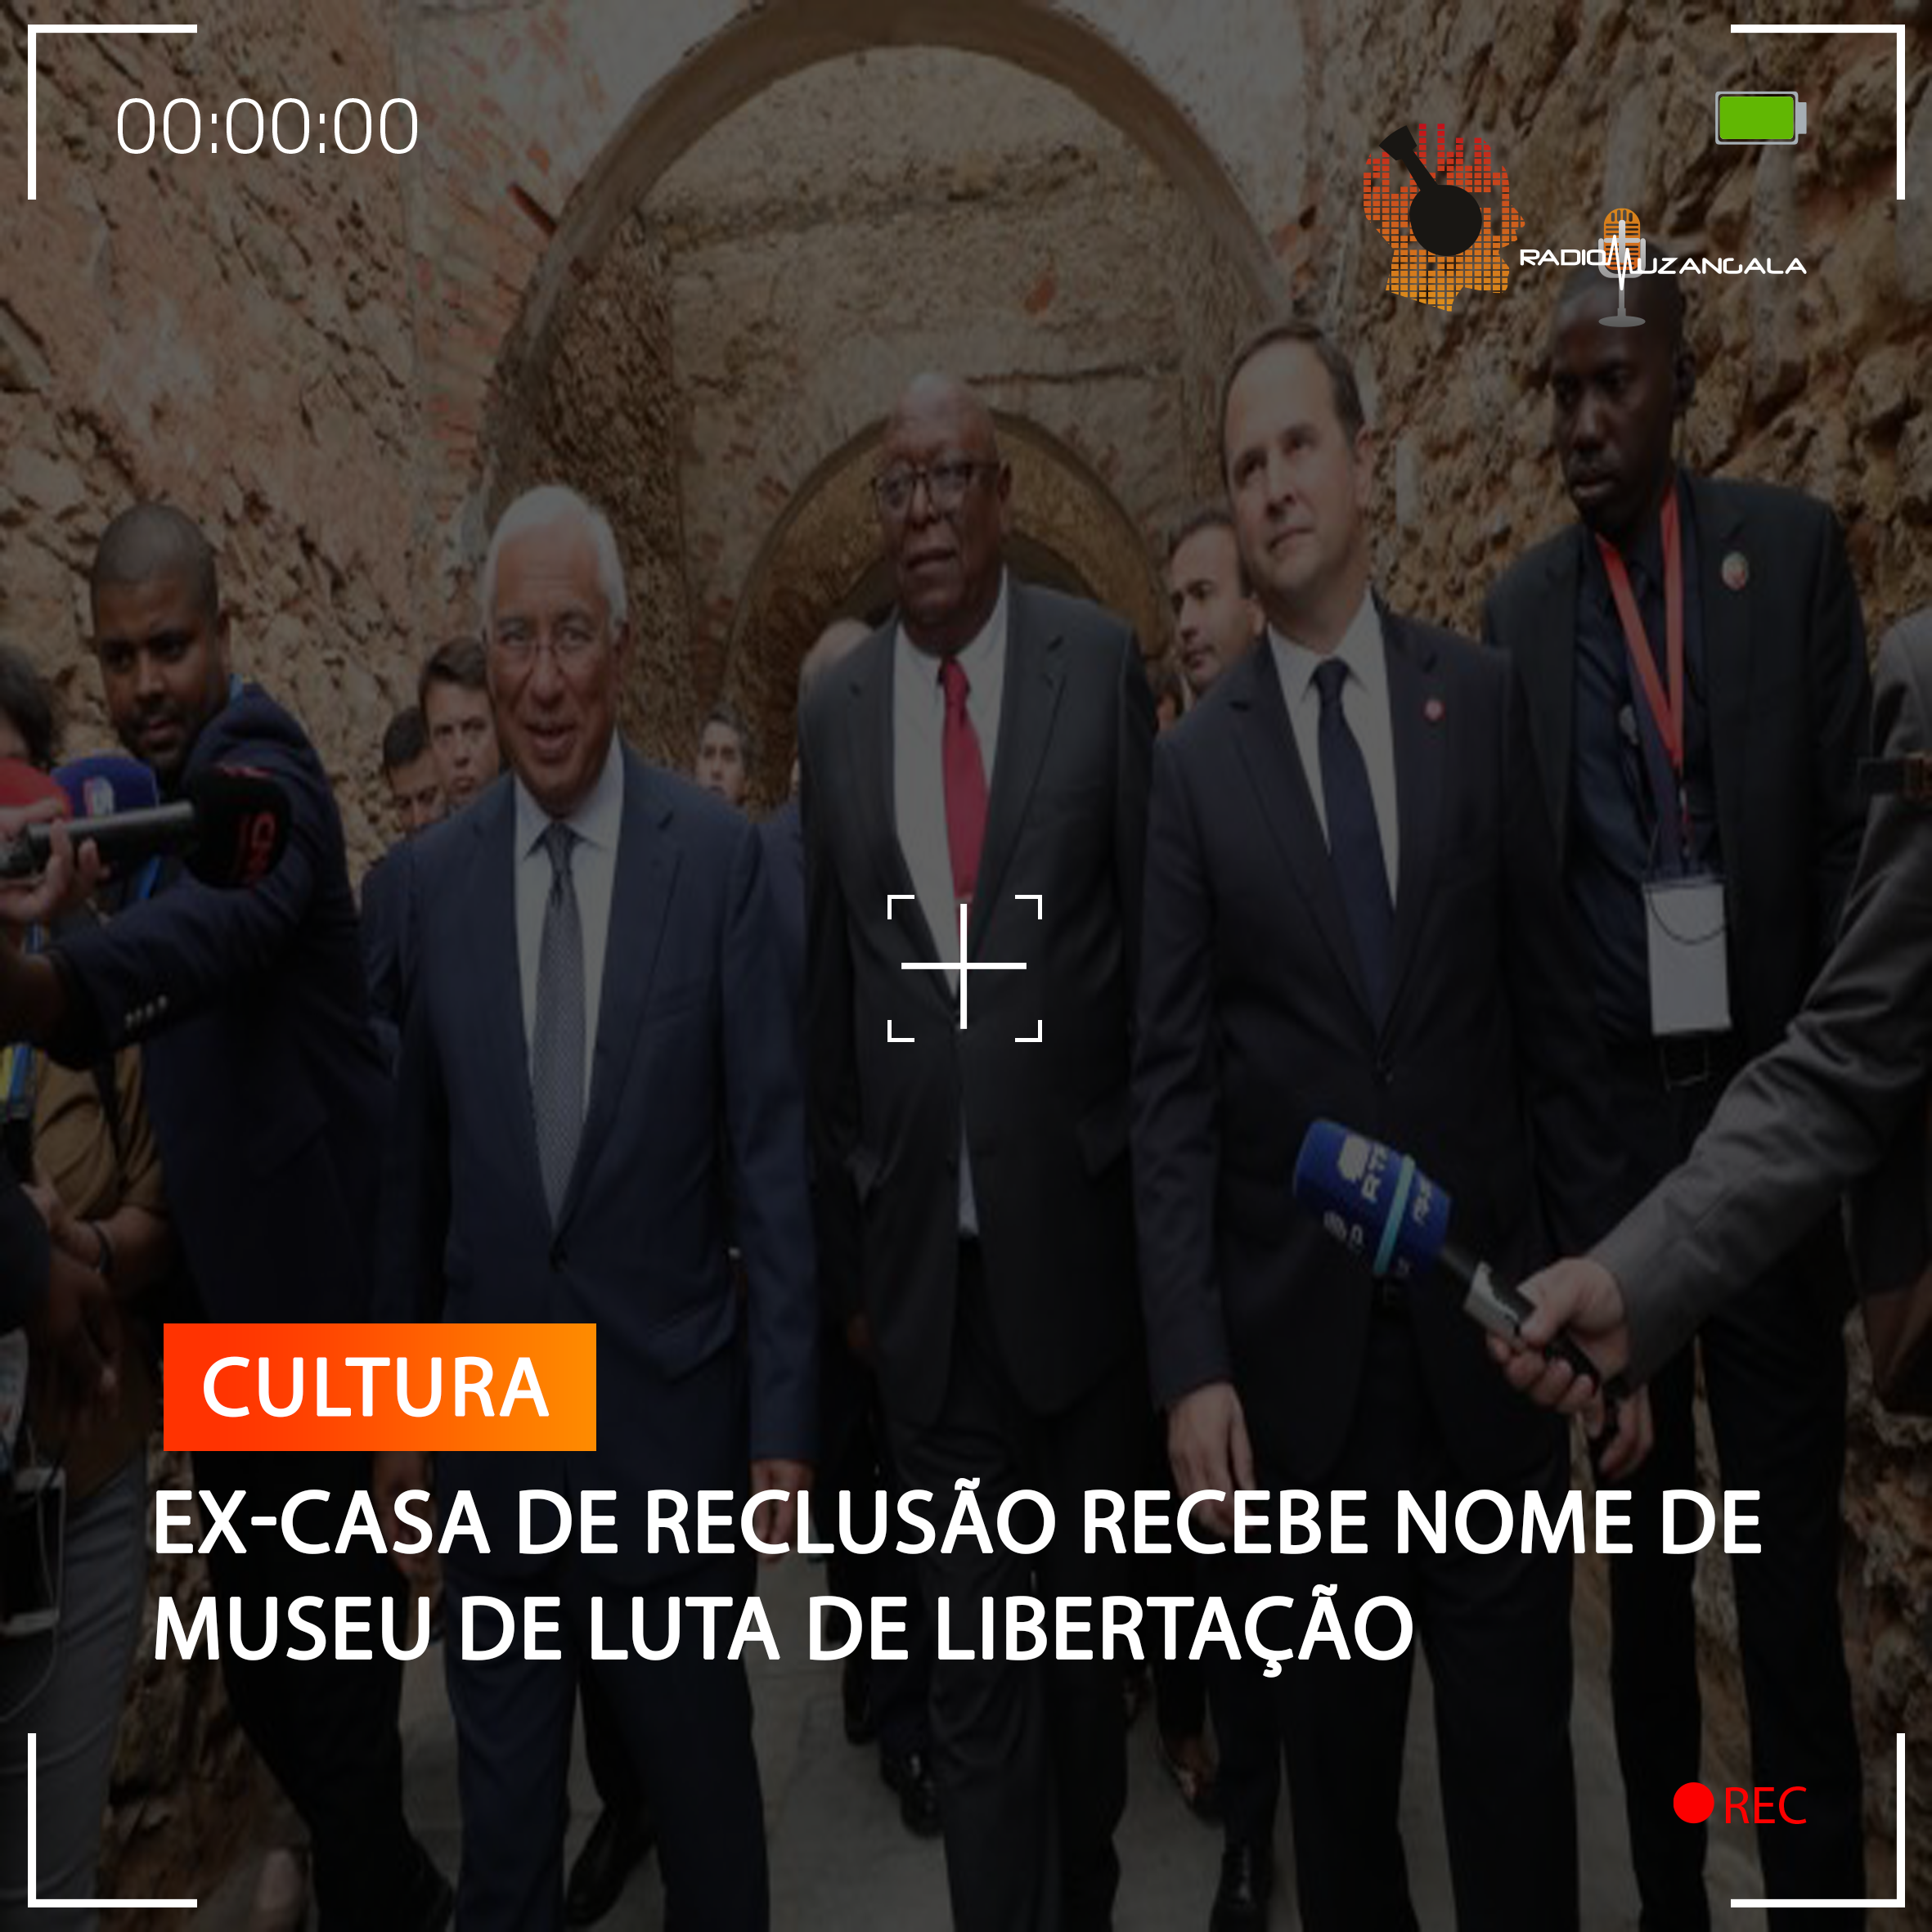  EX-CASA DE RECLUSÃO RECEBE NOME DE MUSEU DE LUTA DE LIBERTAÇÃO